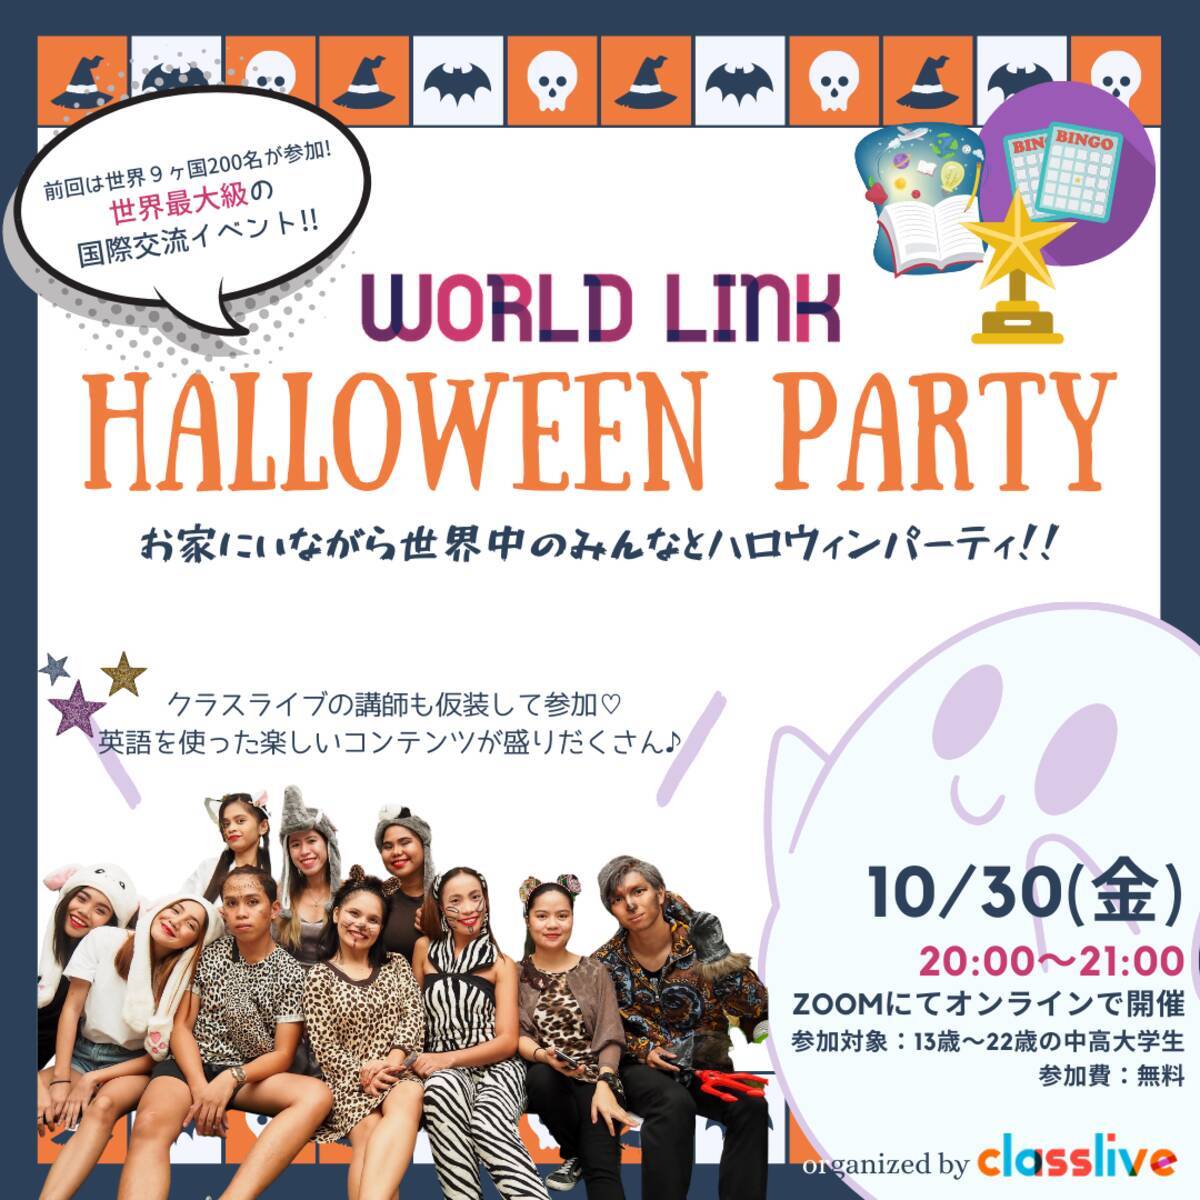 オンラインハロウィンイベント World Link Halloween Party を開催 年10月30日 金 00スタート 年10月23日 エキサイトニュース